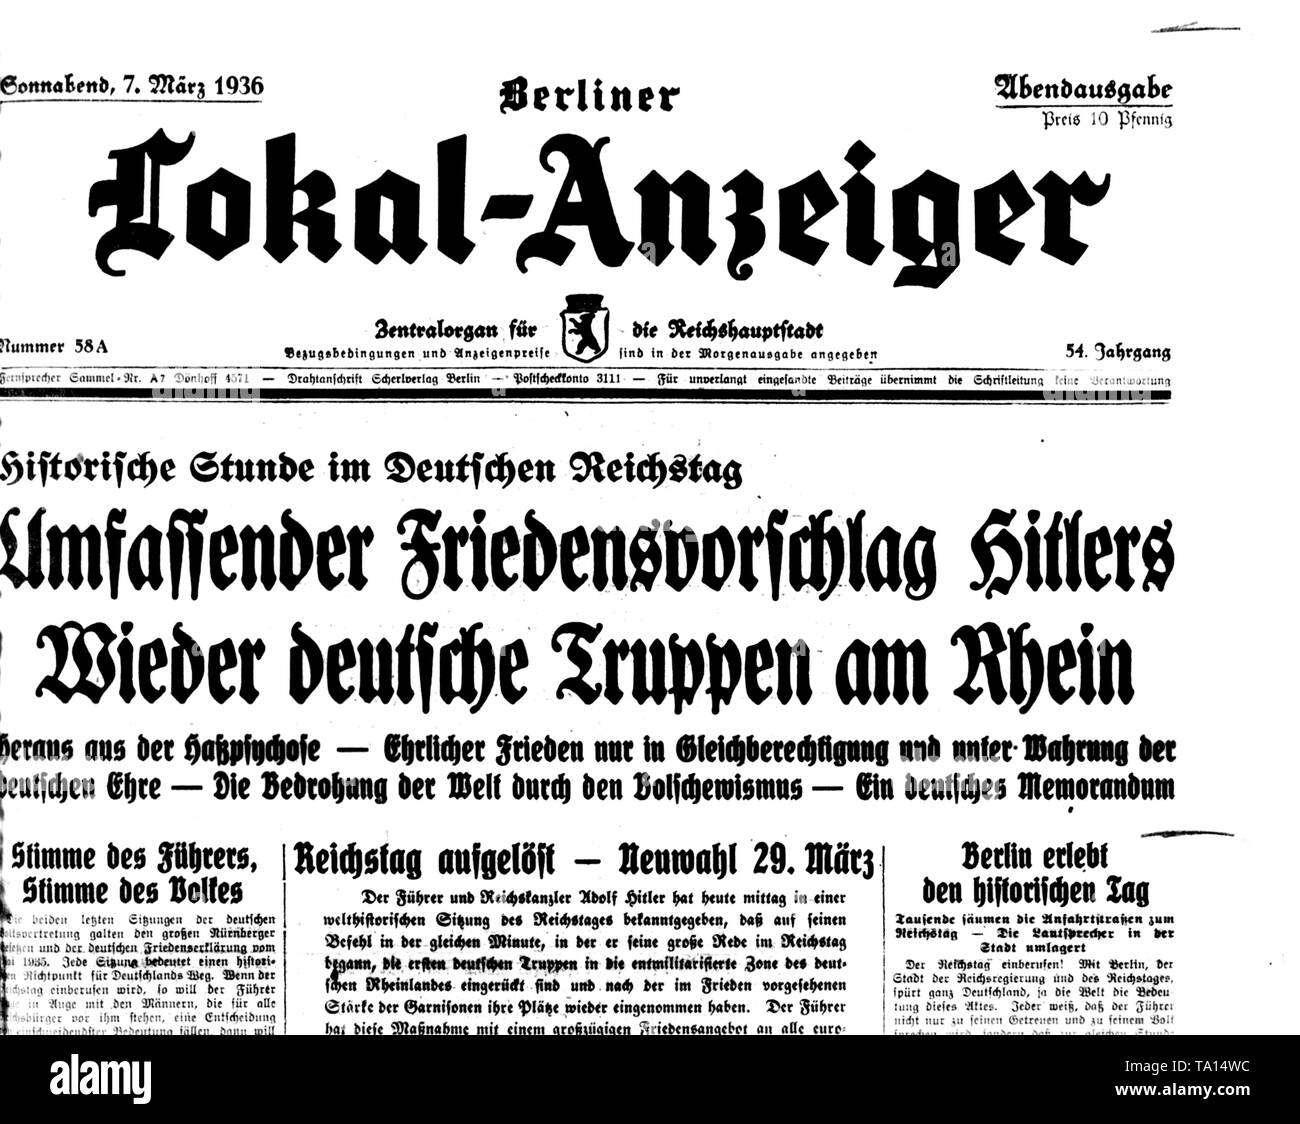 Le Berliner Lokal-Anzeiger commentaires sur la remilitarisation de la Rhénanie dans conformément aux règles de la langue nazie (Sprachregelung), sous le titre "Les propositions globales de paix d'Hitler's' les troupes allemandes sur le Rhin". Banque D'Images